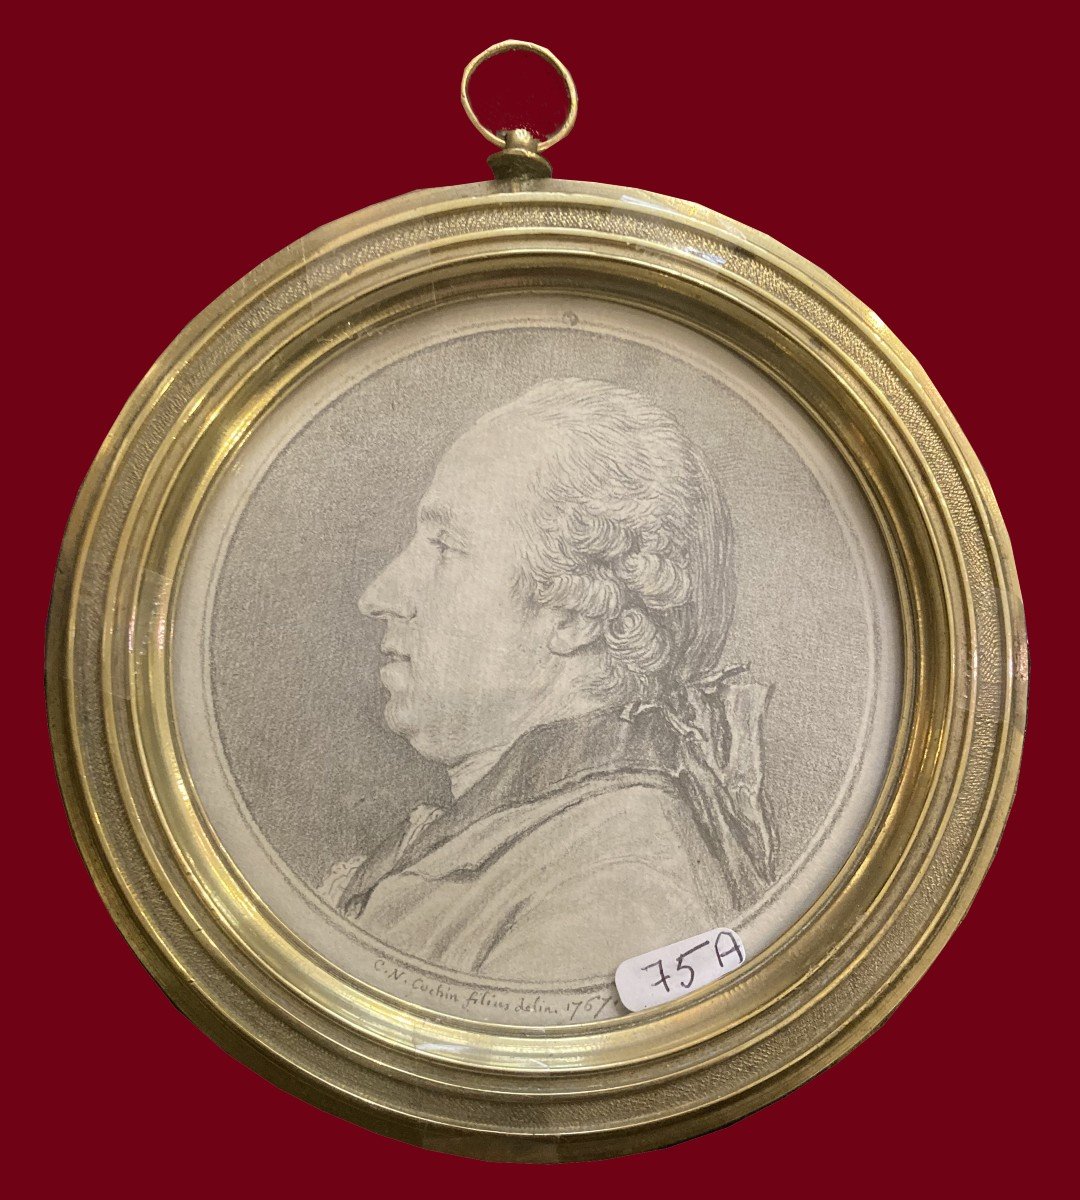 COCHIN Charles-Nicolas (1715-1790) "Portrait J-Baptiste COLLET" Dessin/Pierre noire, signé,daté